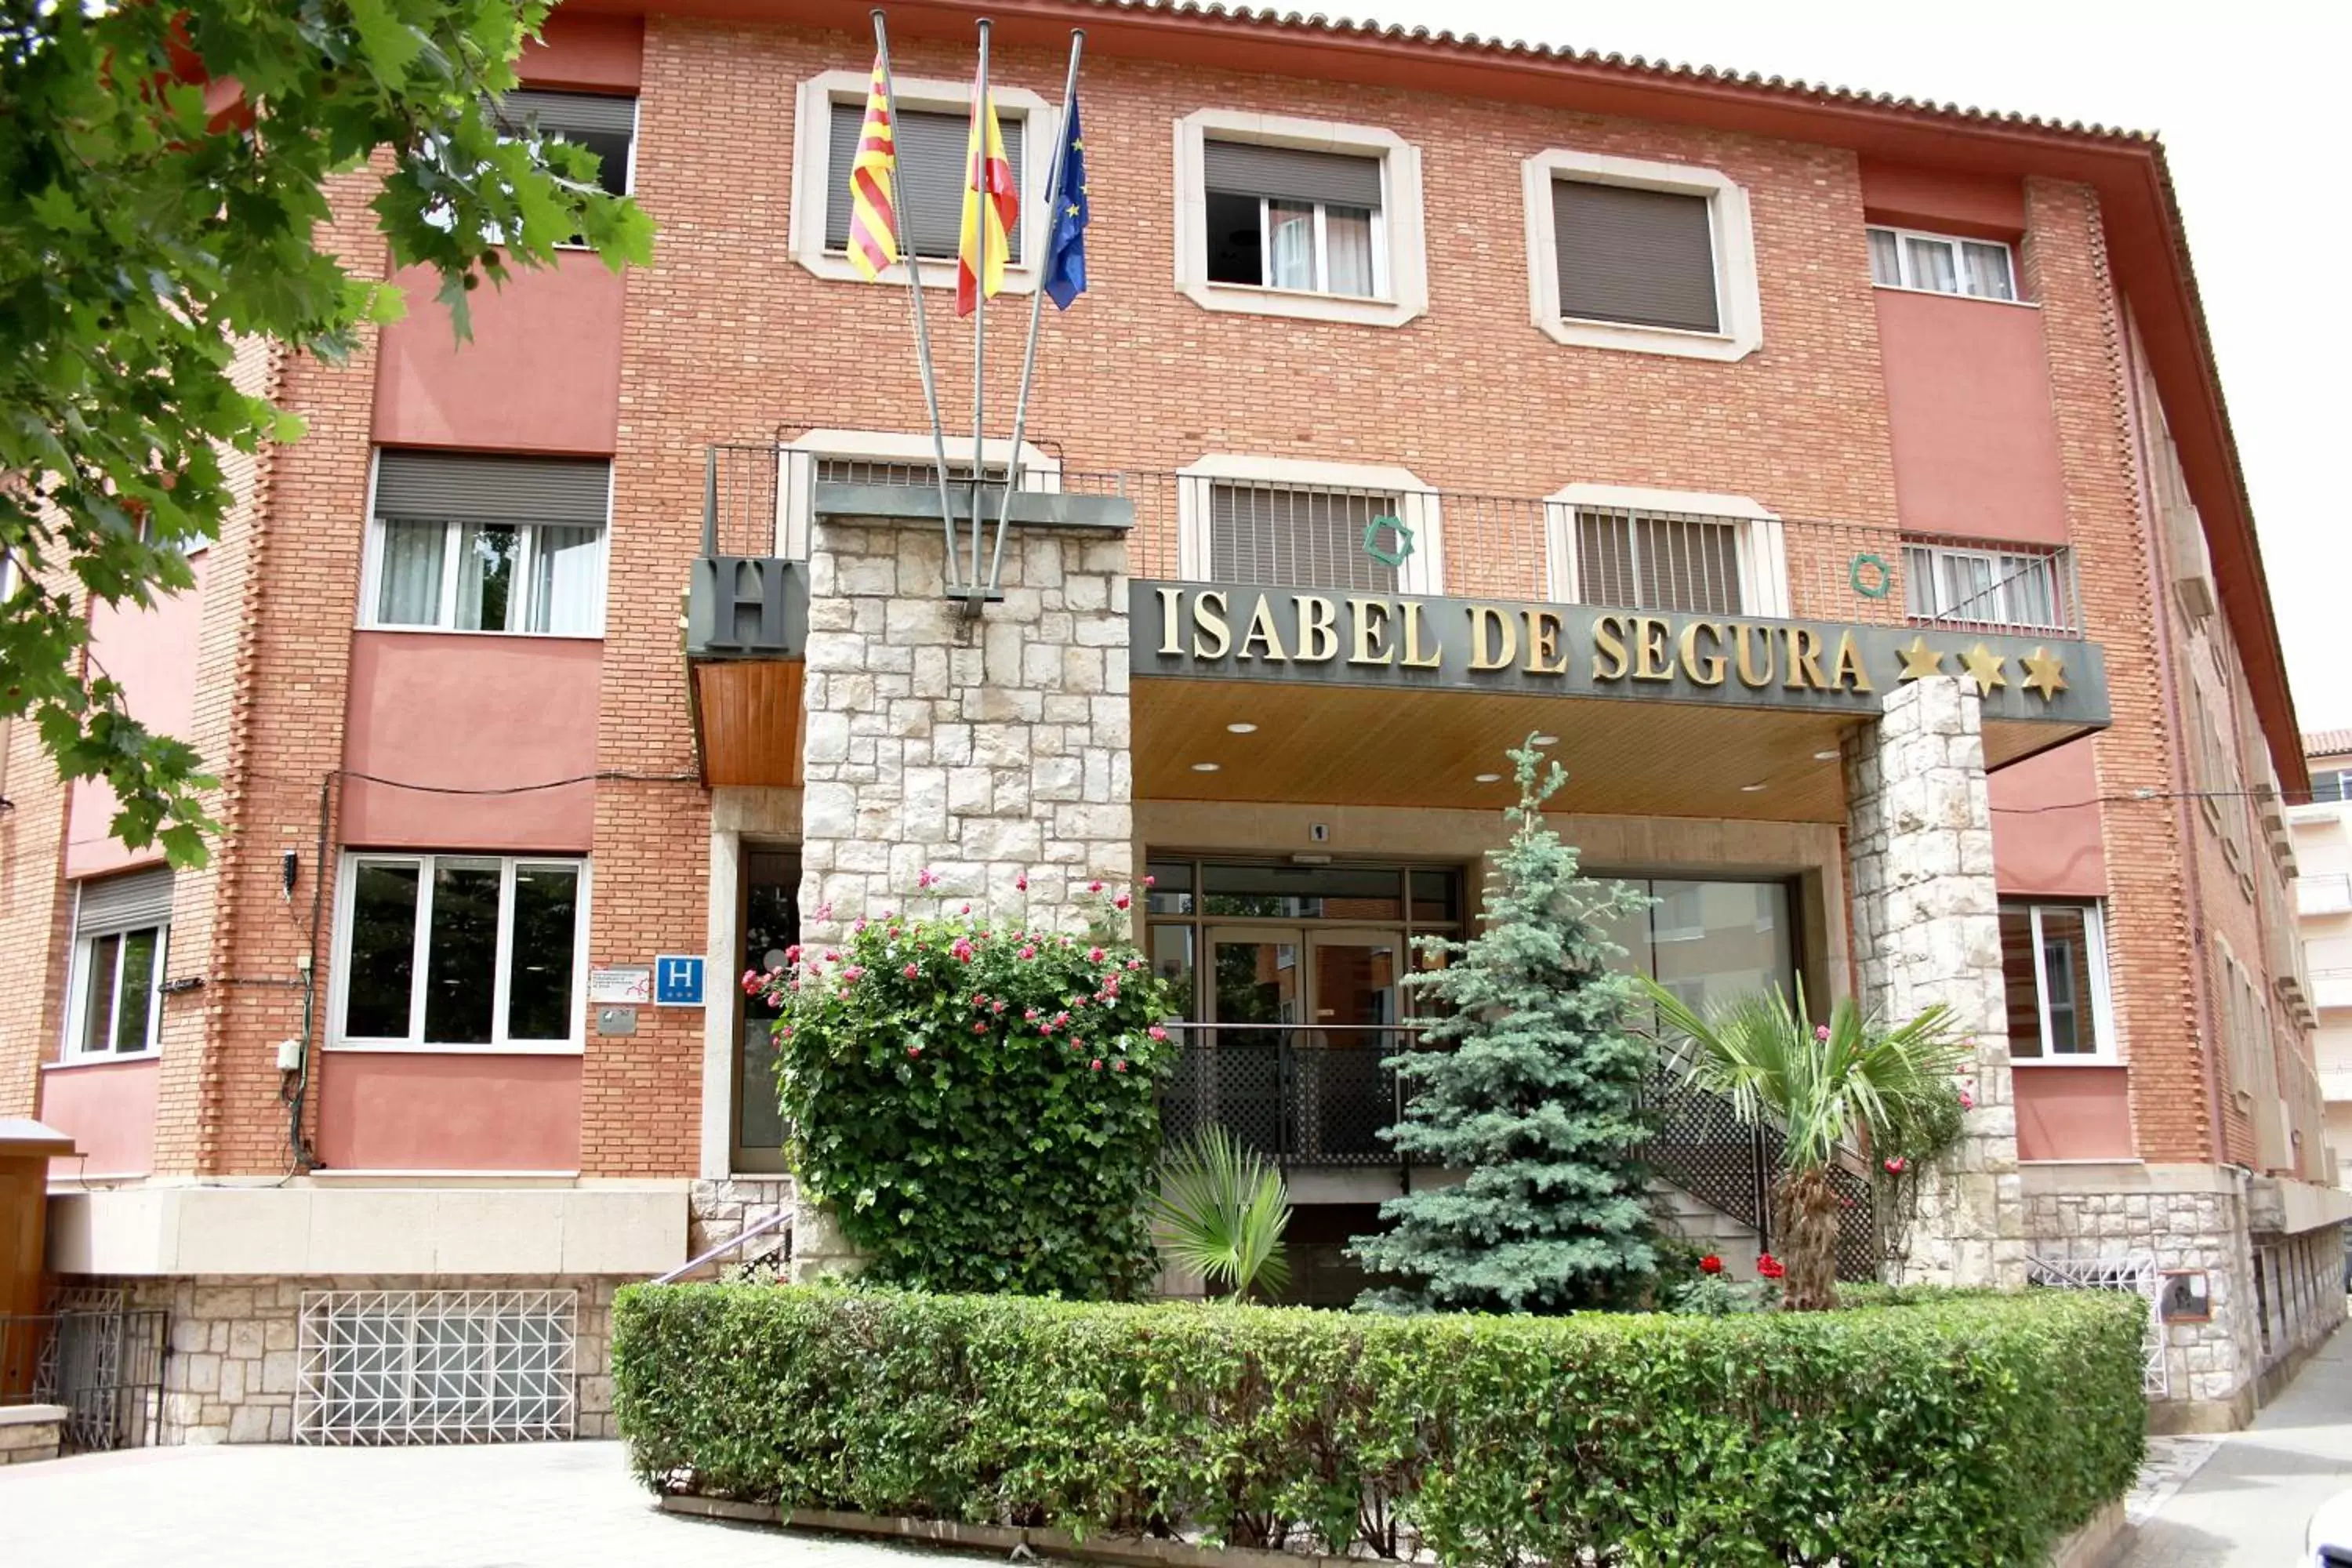 Facade/entrance, Property Building in Hotel Isabel de Segura